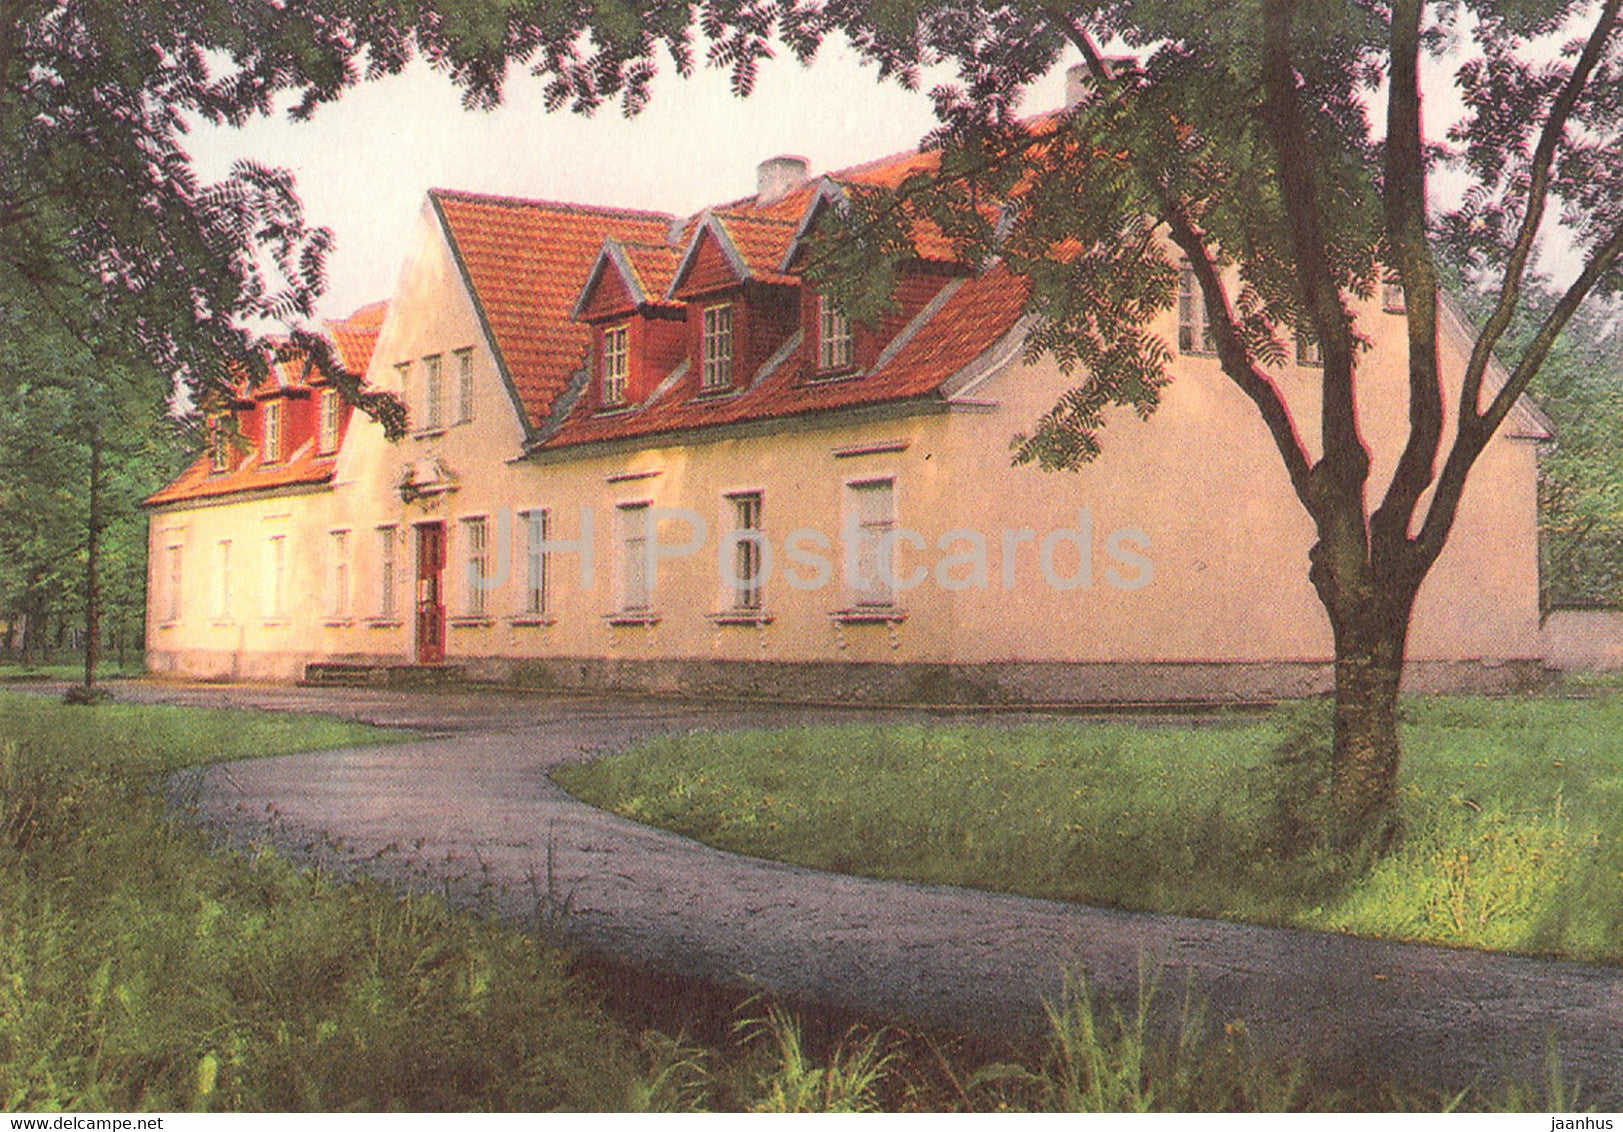 Paide - Local Lore Museum - 1993 - Estonia - unused - JH Postcards